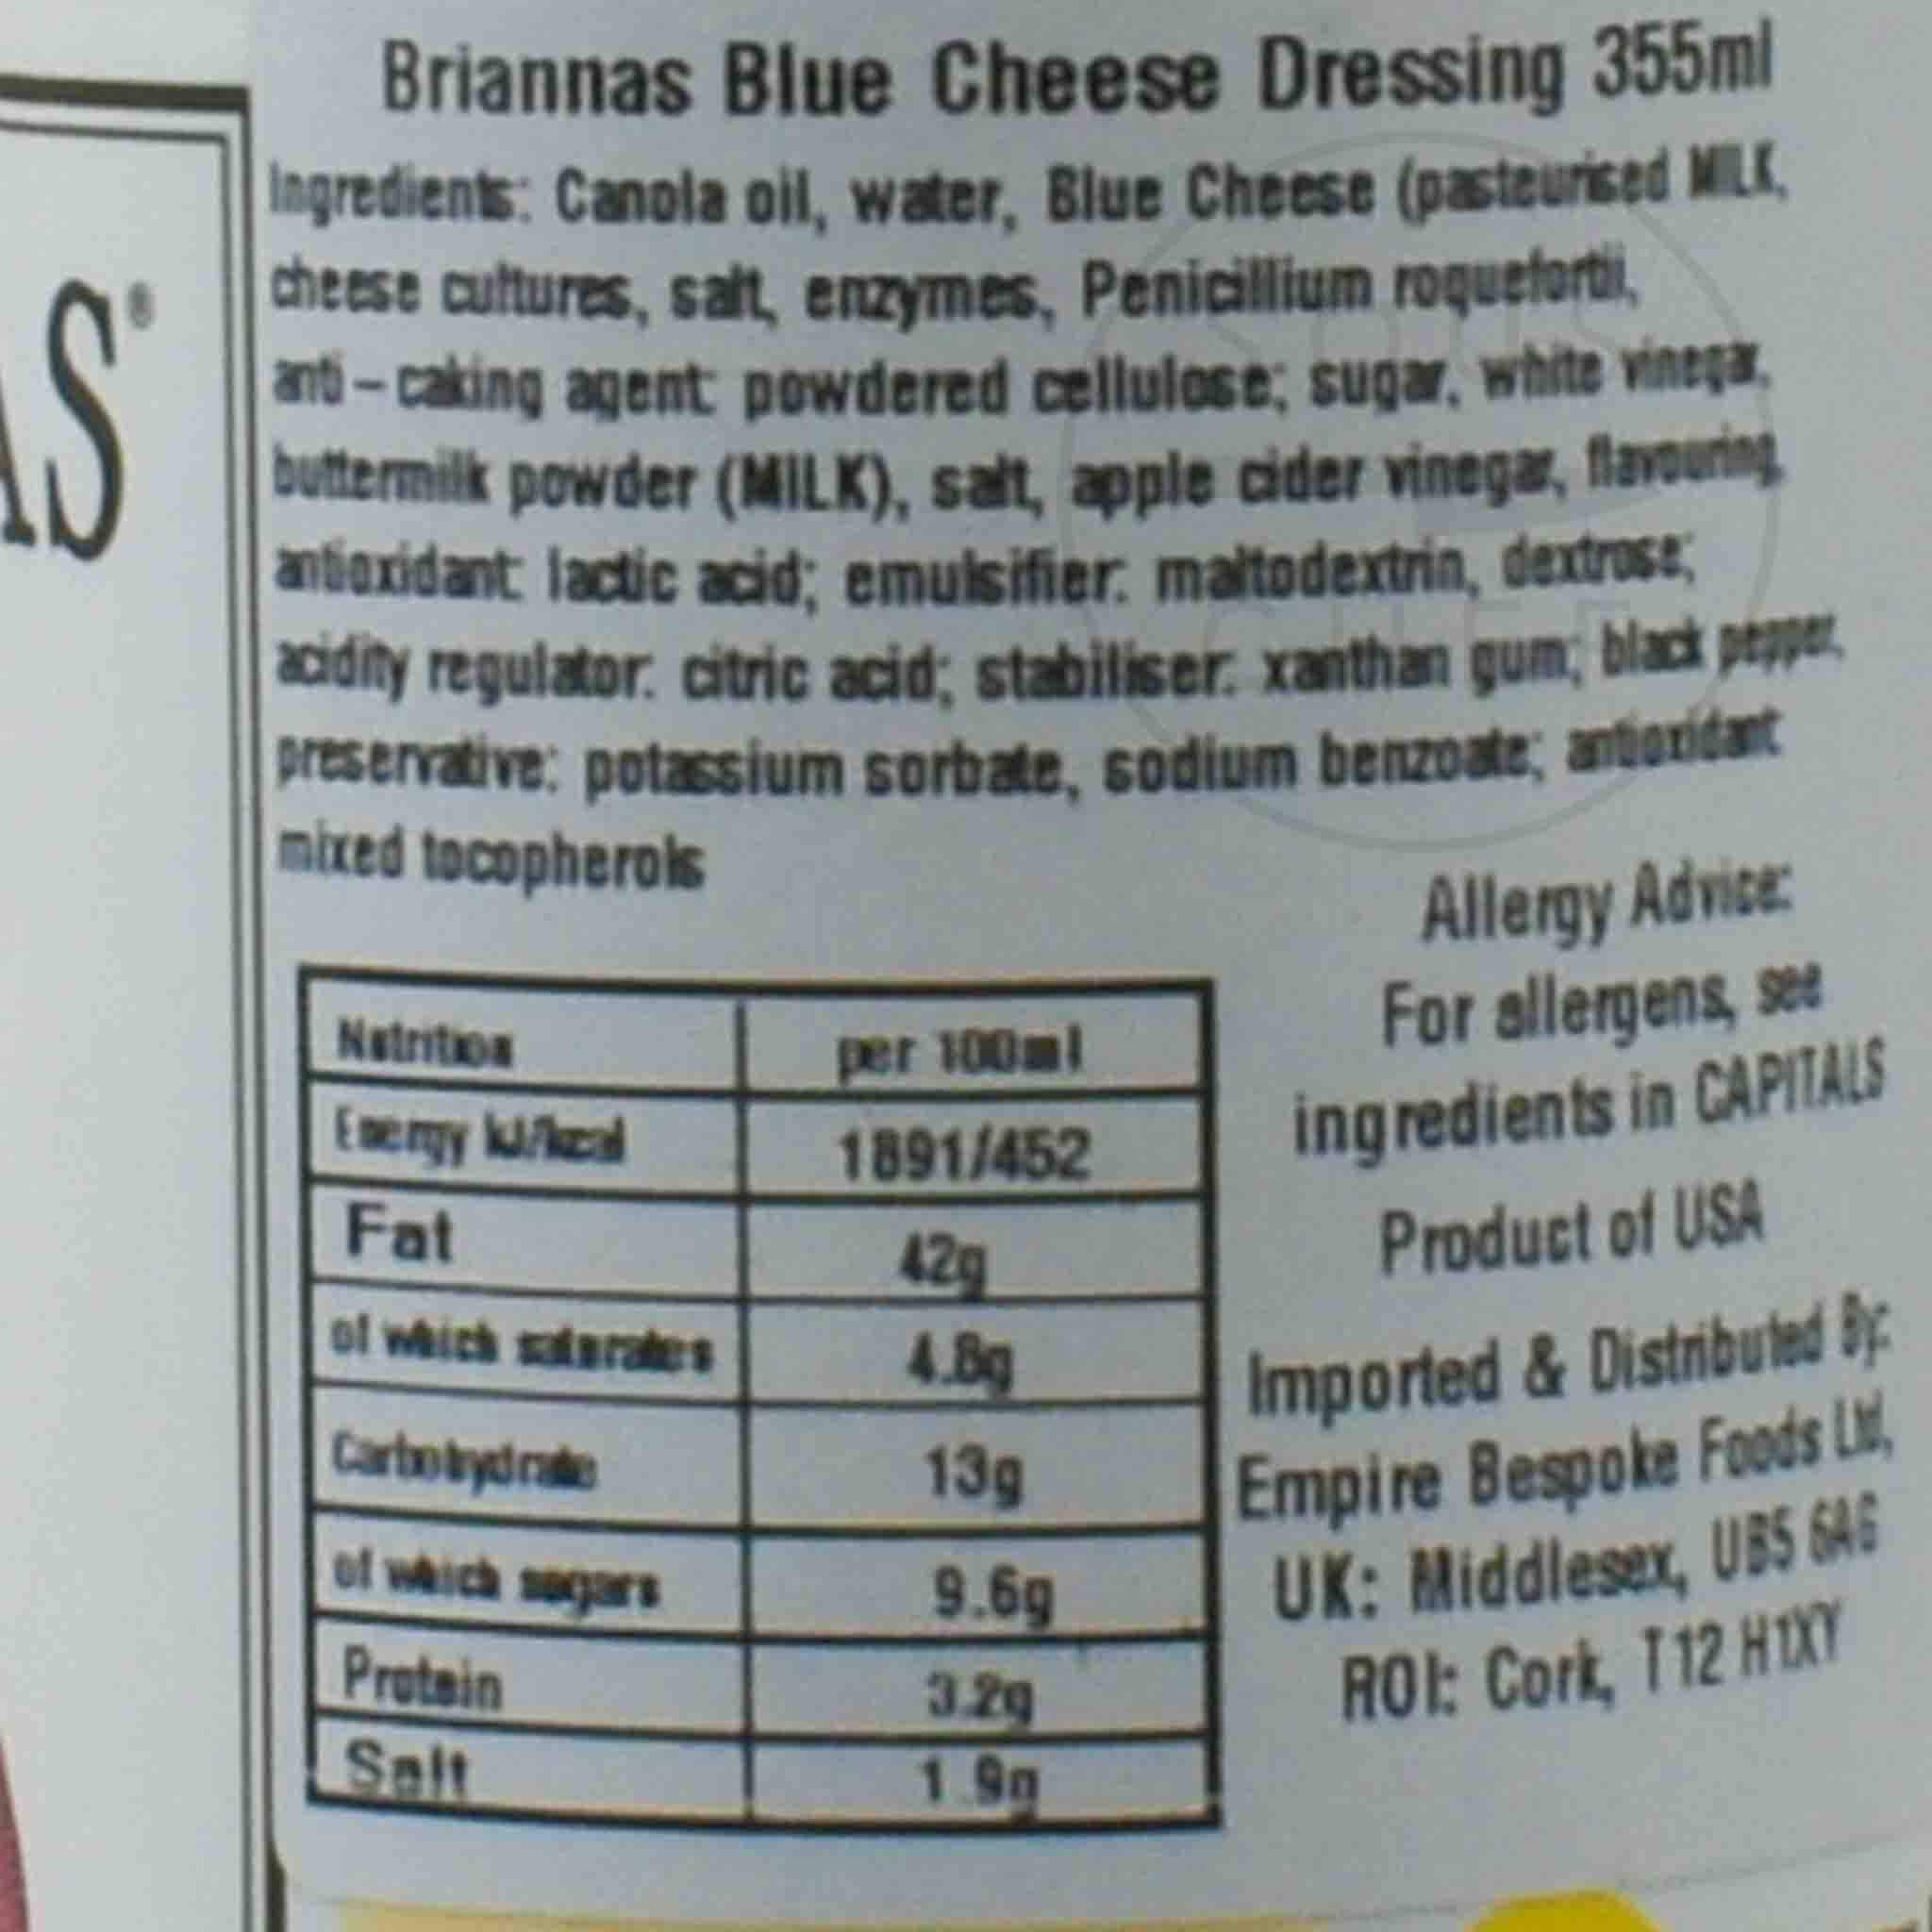 Briannas Blue Cheese Dressing 355ml